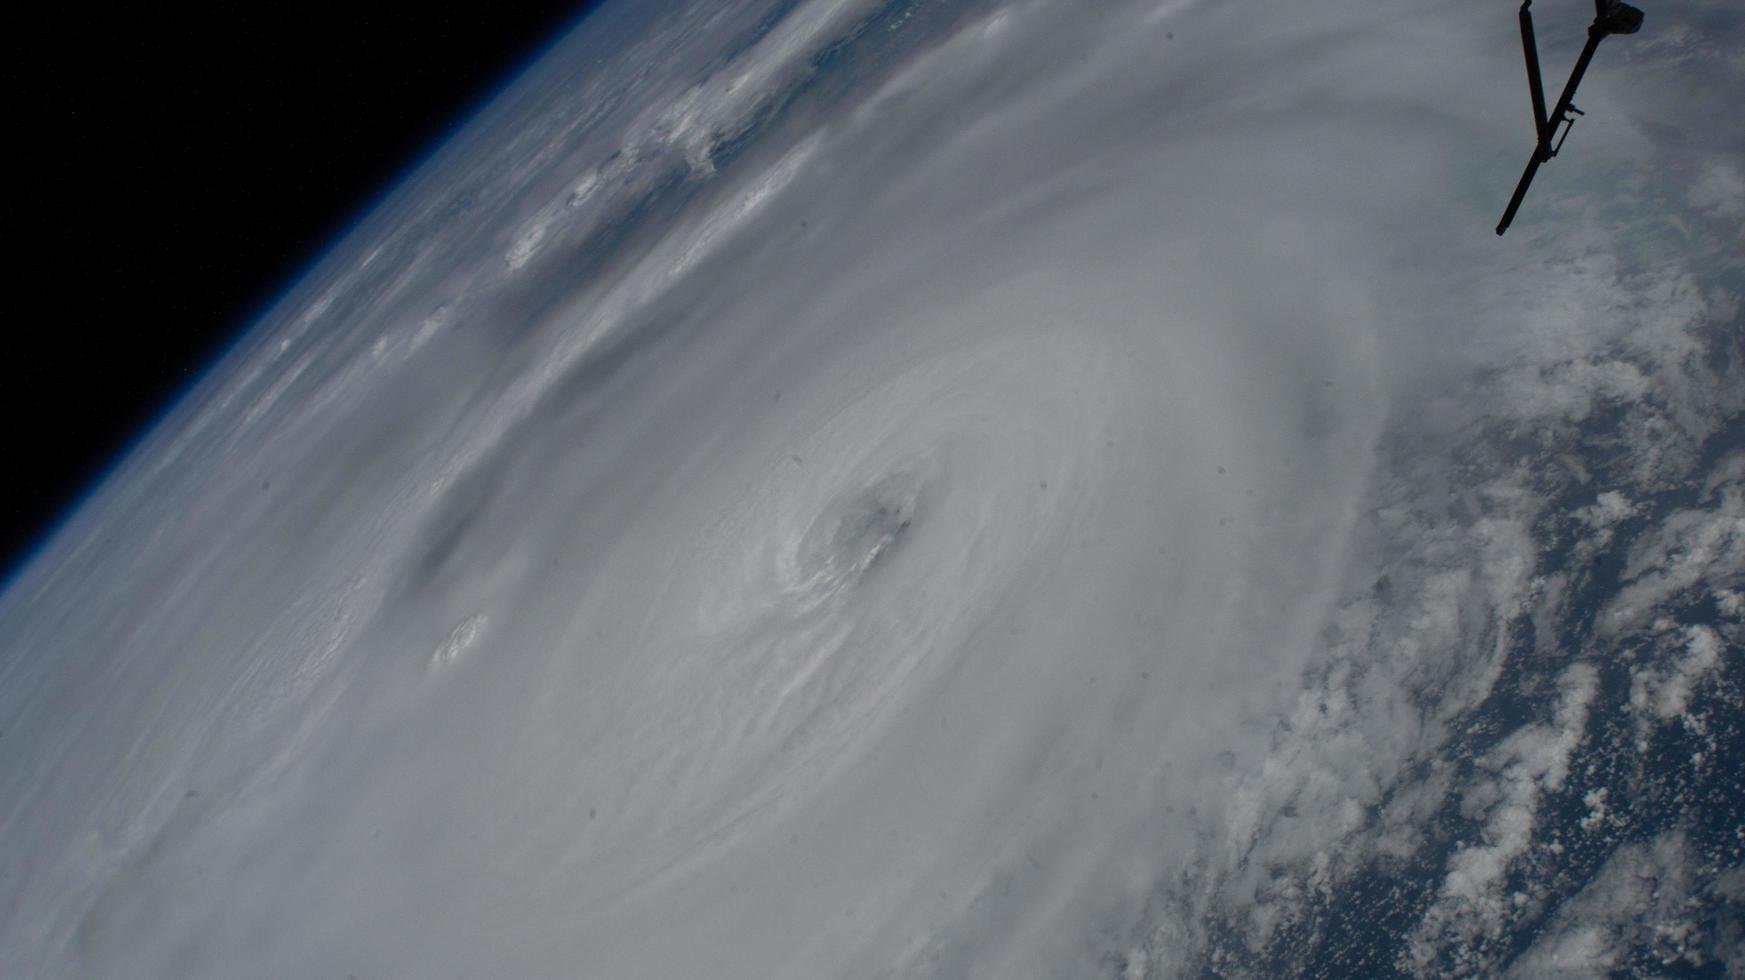 28 septembre 2022 259 miles au-dessus du golfe du mexique - l'ouragan ian est photographié s'approchant de la côte ouest de la floride comme une tempête de catégorie 4 photo